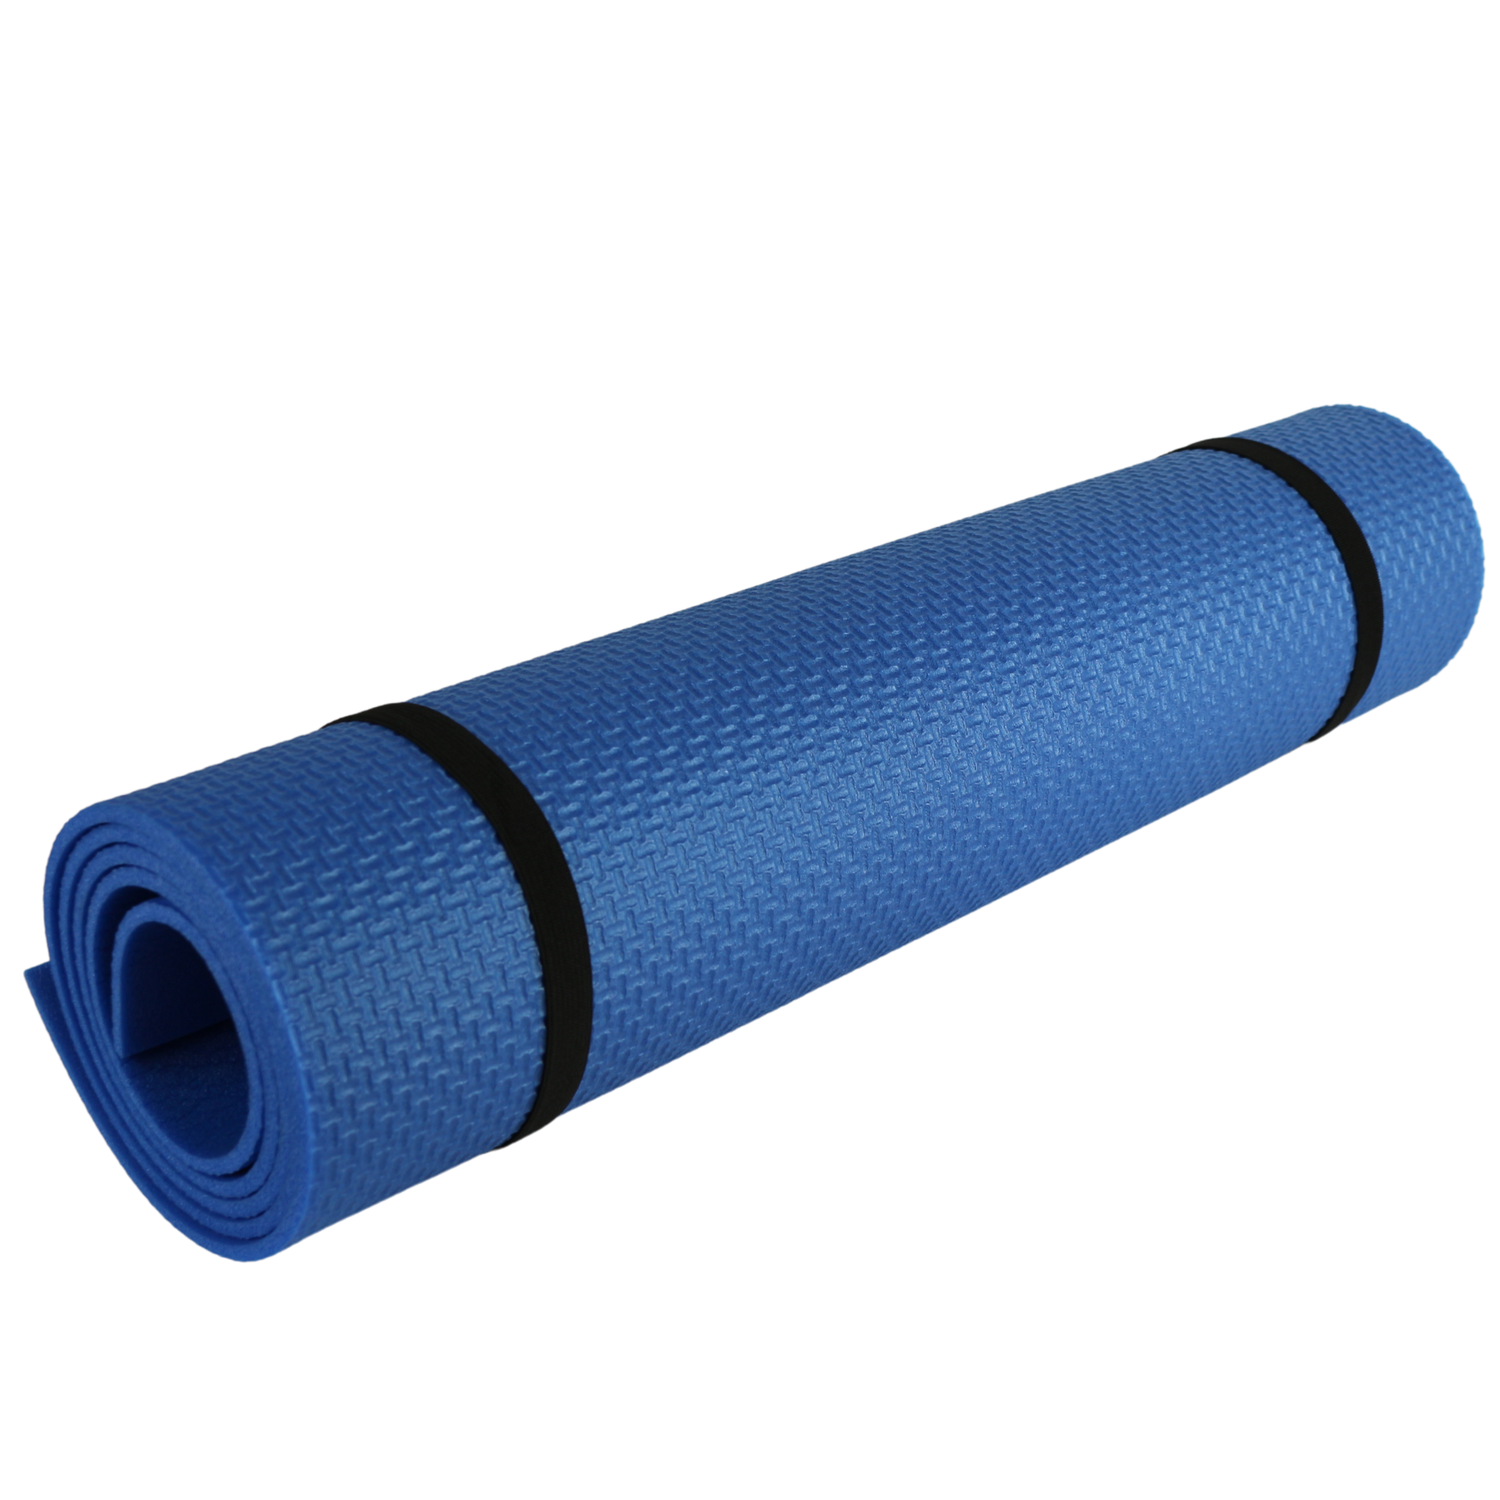 Коврик спортивный Espado Fitness 1400*500*5мм голубой - фото 2